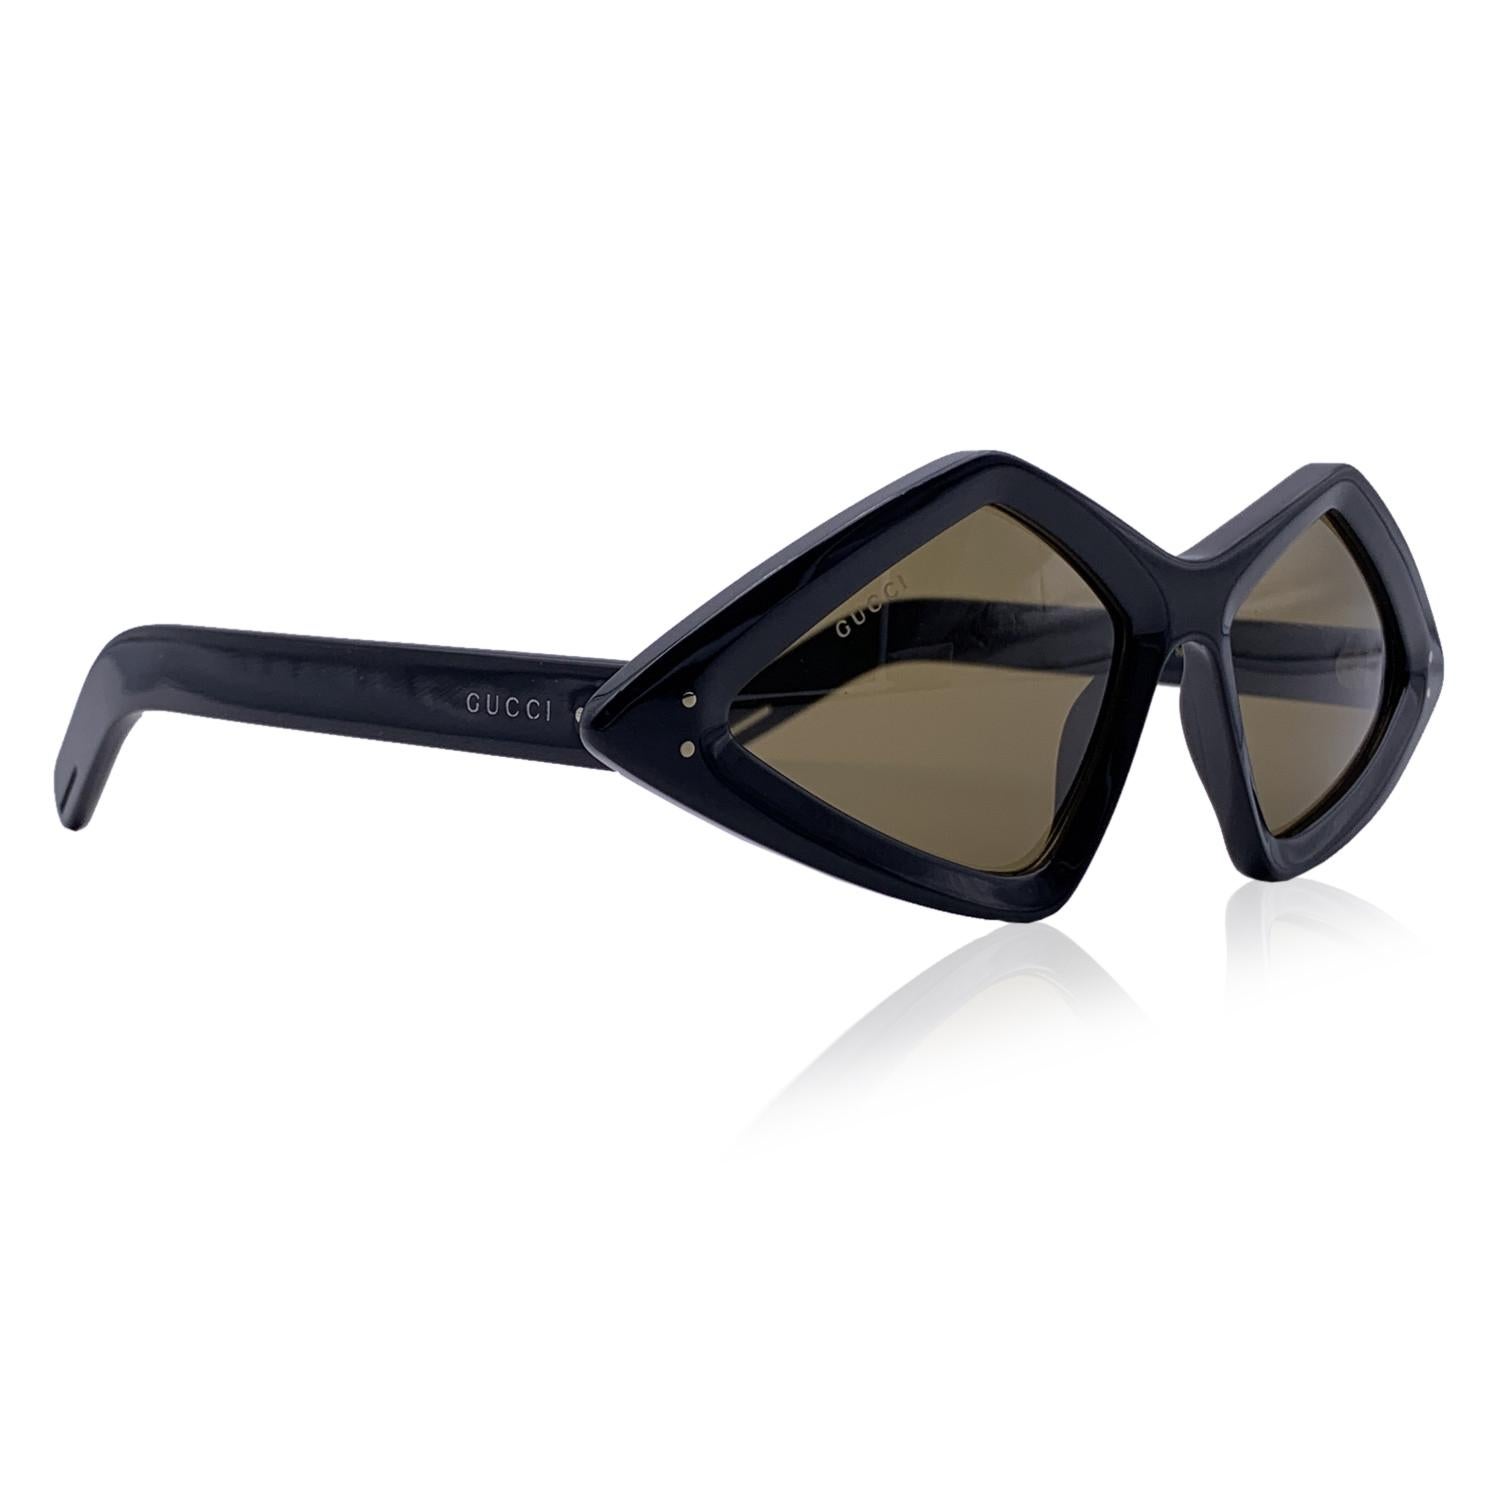 Gucci Sonnenbrille Modell GG0496S - 001. Rahmen aus schwarzem Acetat. Gucci Unterschriften auf den Schläfen. Original braune Gläser. Mod & refs: GG0496S - 001 - 59/18 - 145. Hergestellt in Italien

Einzelheiten

MATERIAL: Acetat

FARBE: